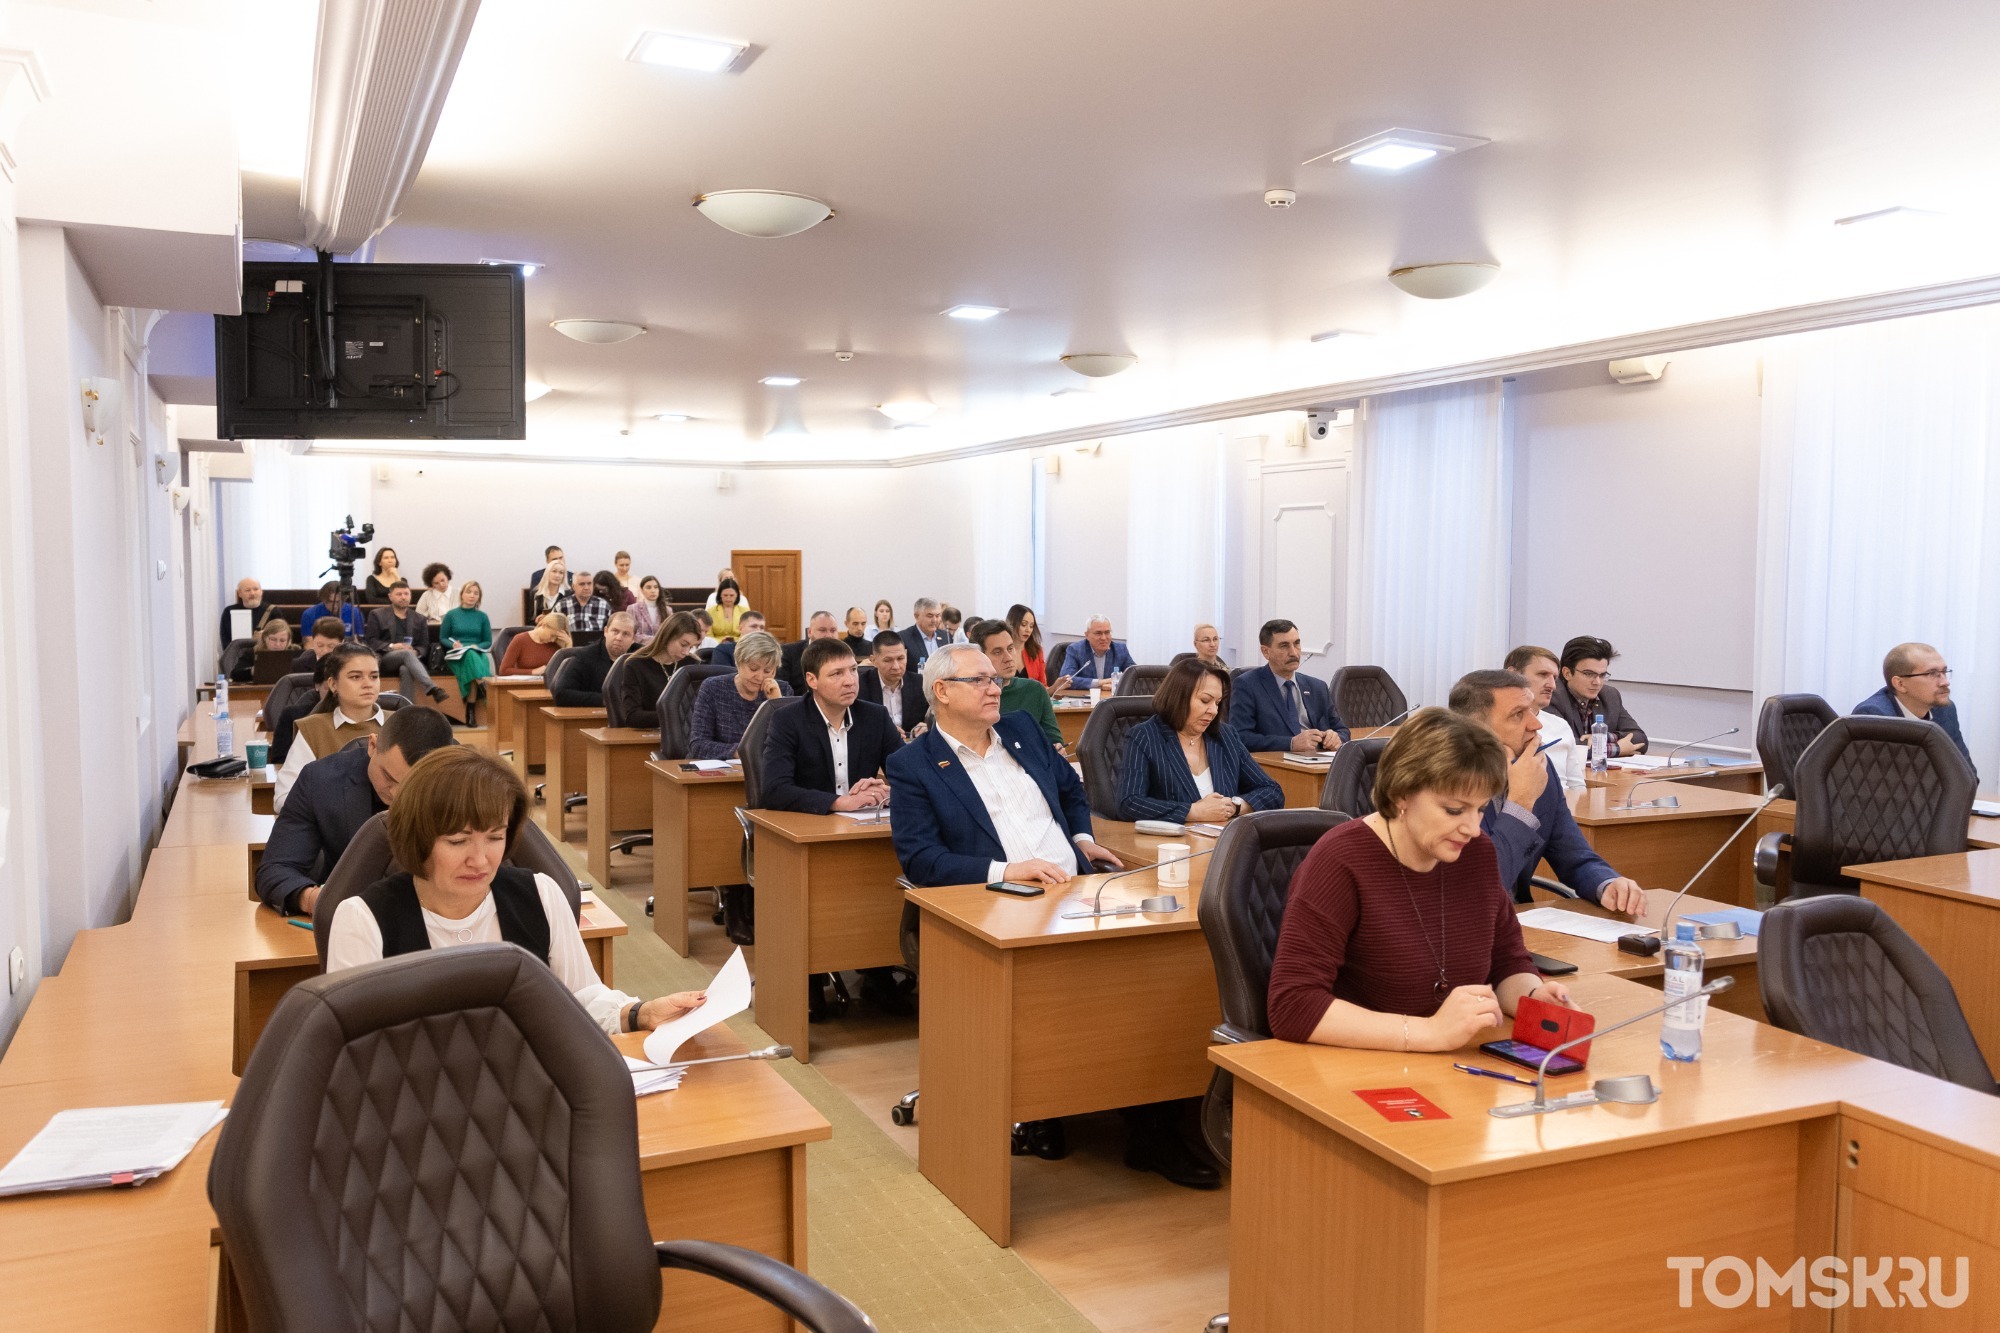 Публичные слушания по обсуждению изменений в Устав Томска пройдут в гордуме в середине ноября